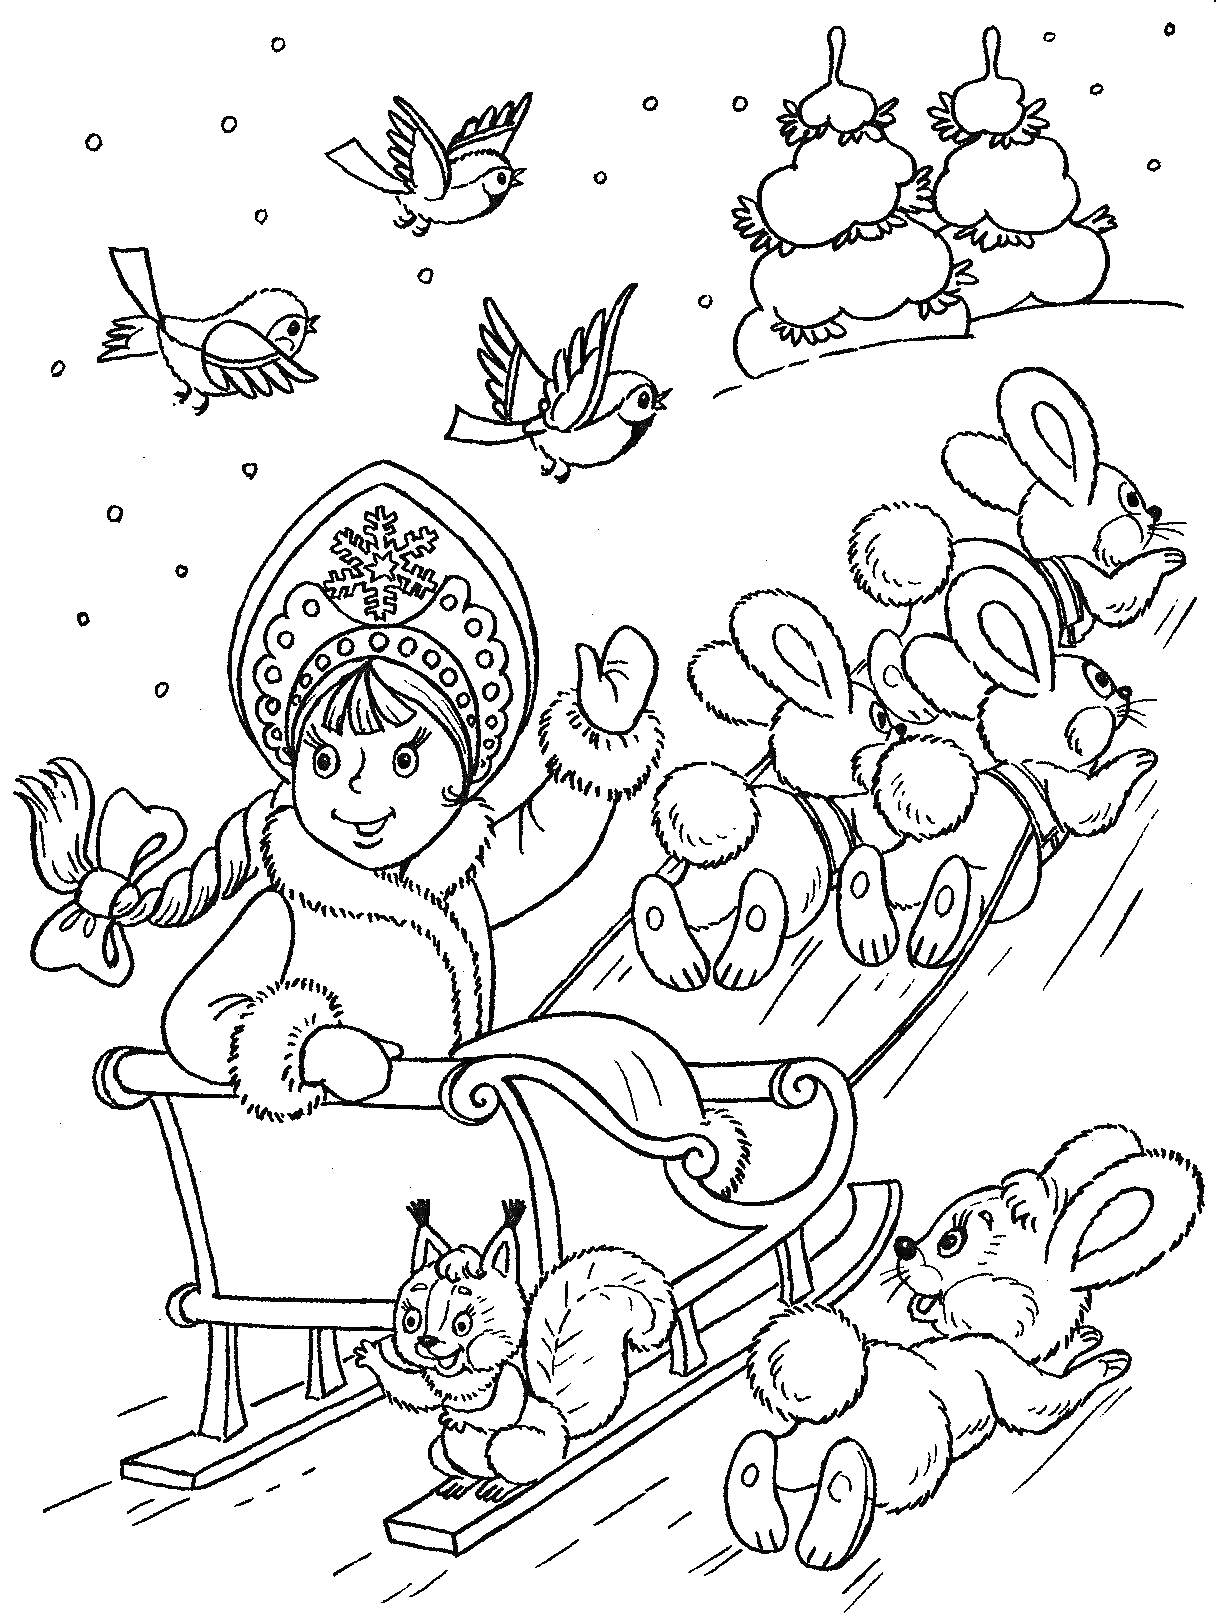 Девочка в зимней одежде и кокошнике едет на санках с белками, запряжёнными зайцами, на фоне зимнего леса